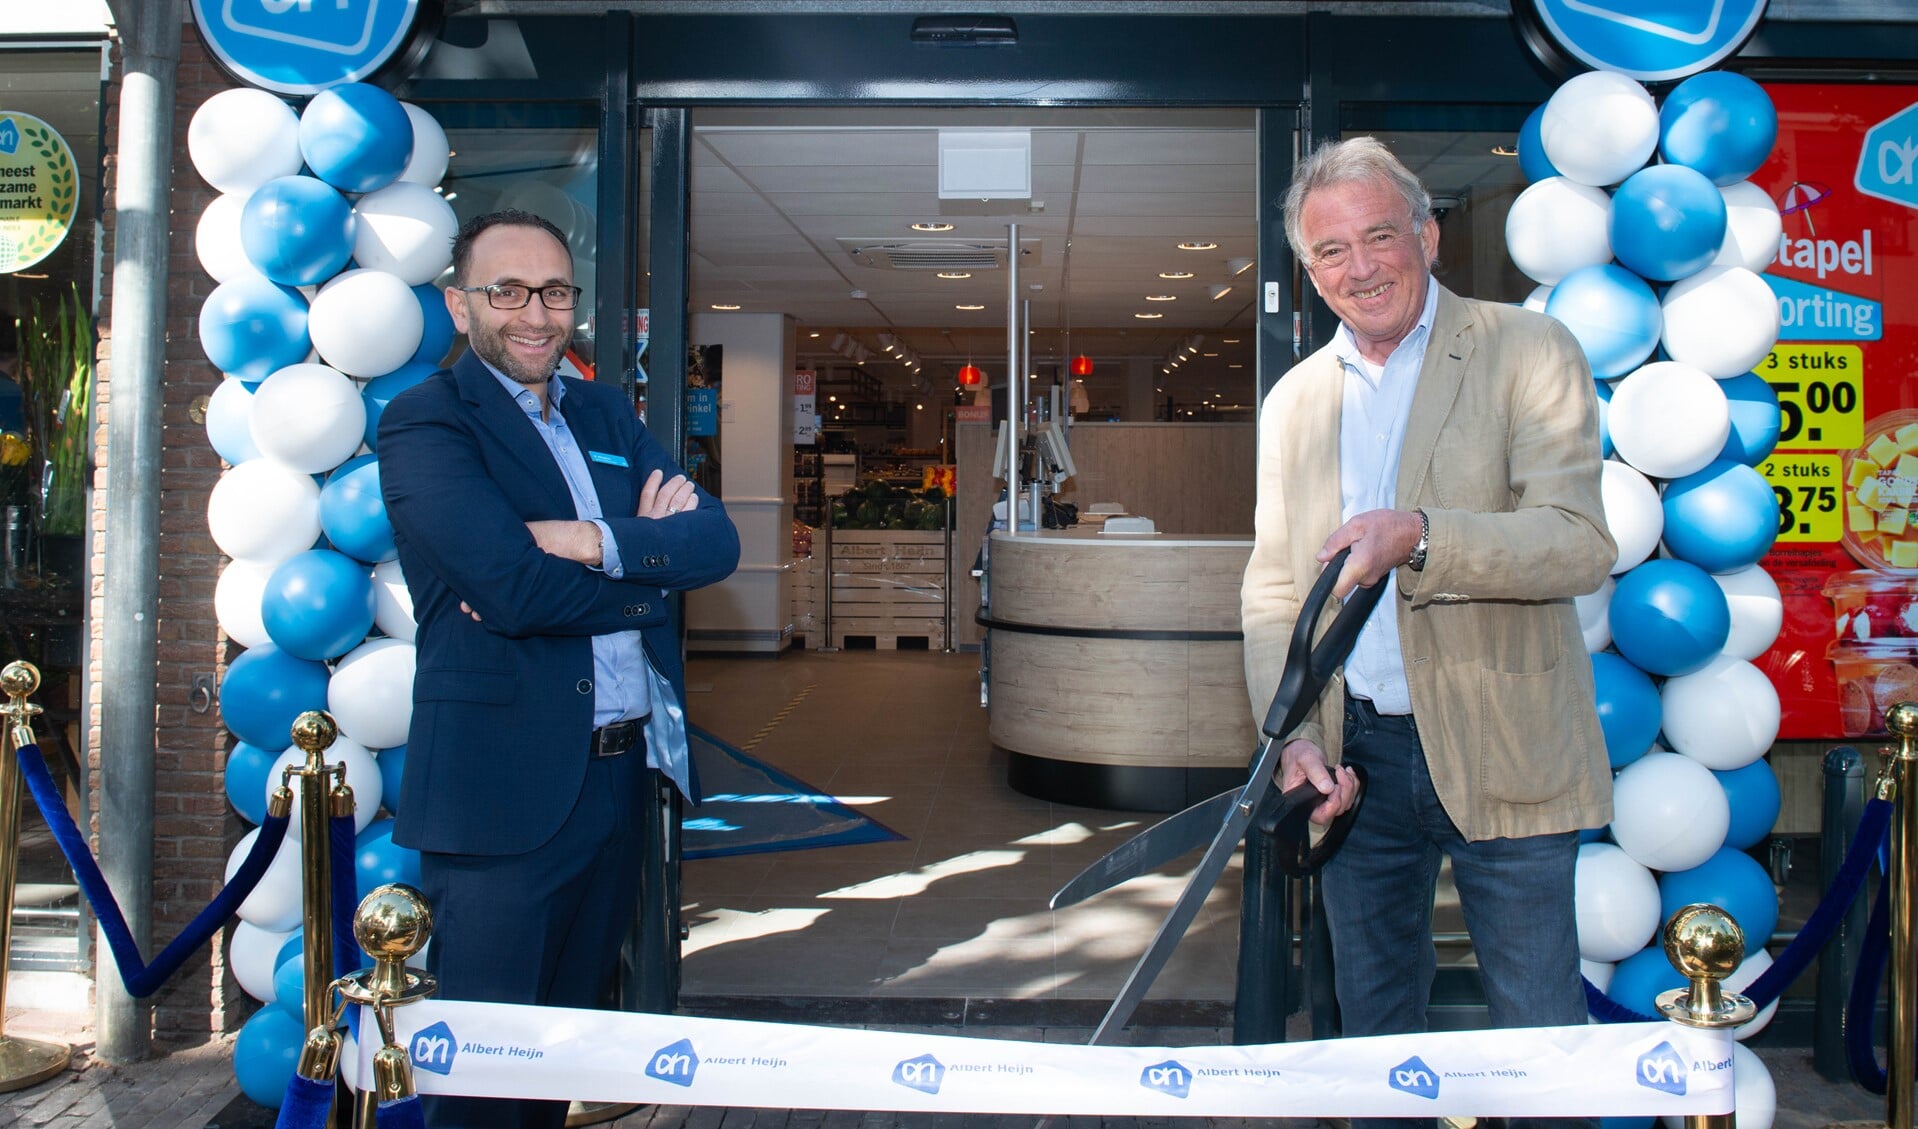 De winkel werd geopend door supermarktmanager Mohamed Albadichi en bovenbuurman Luc Bosch en 